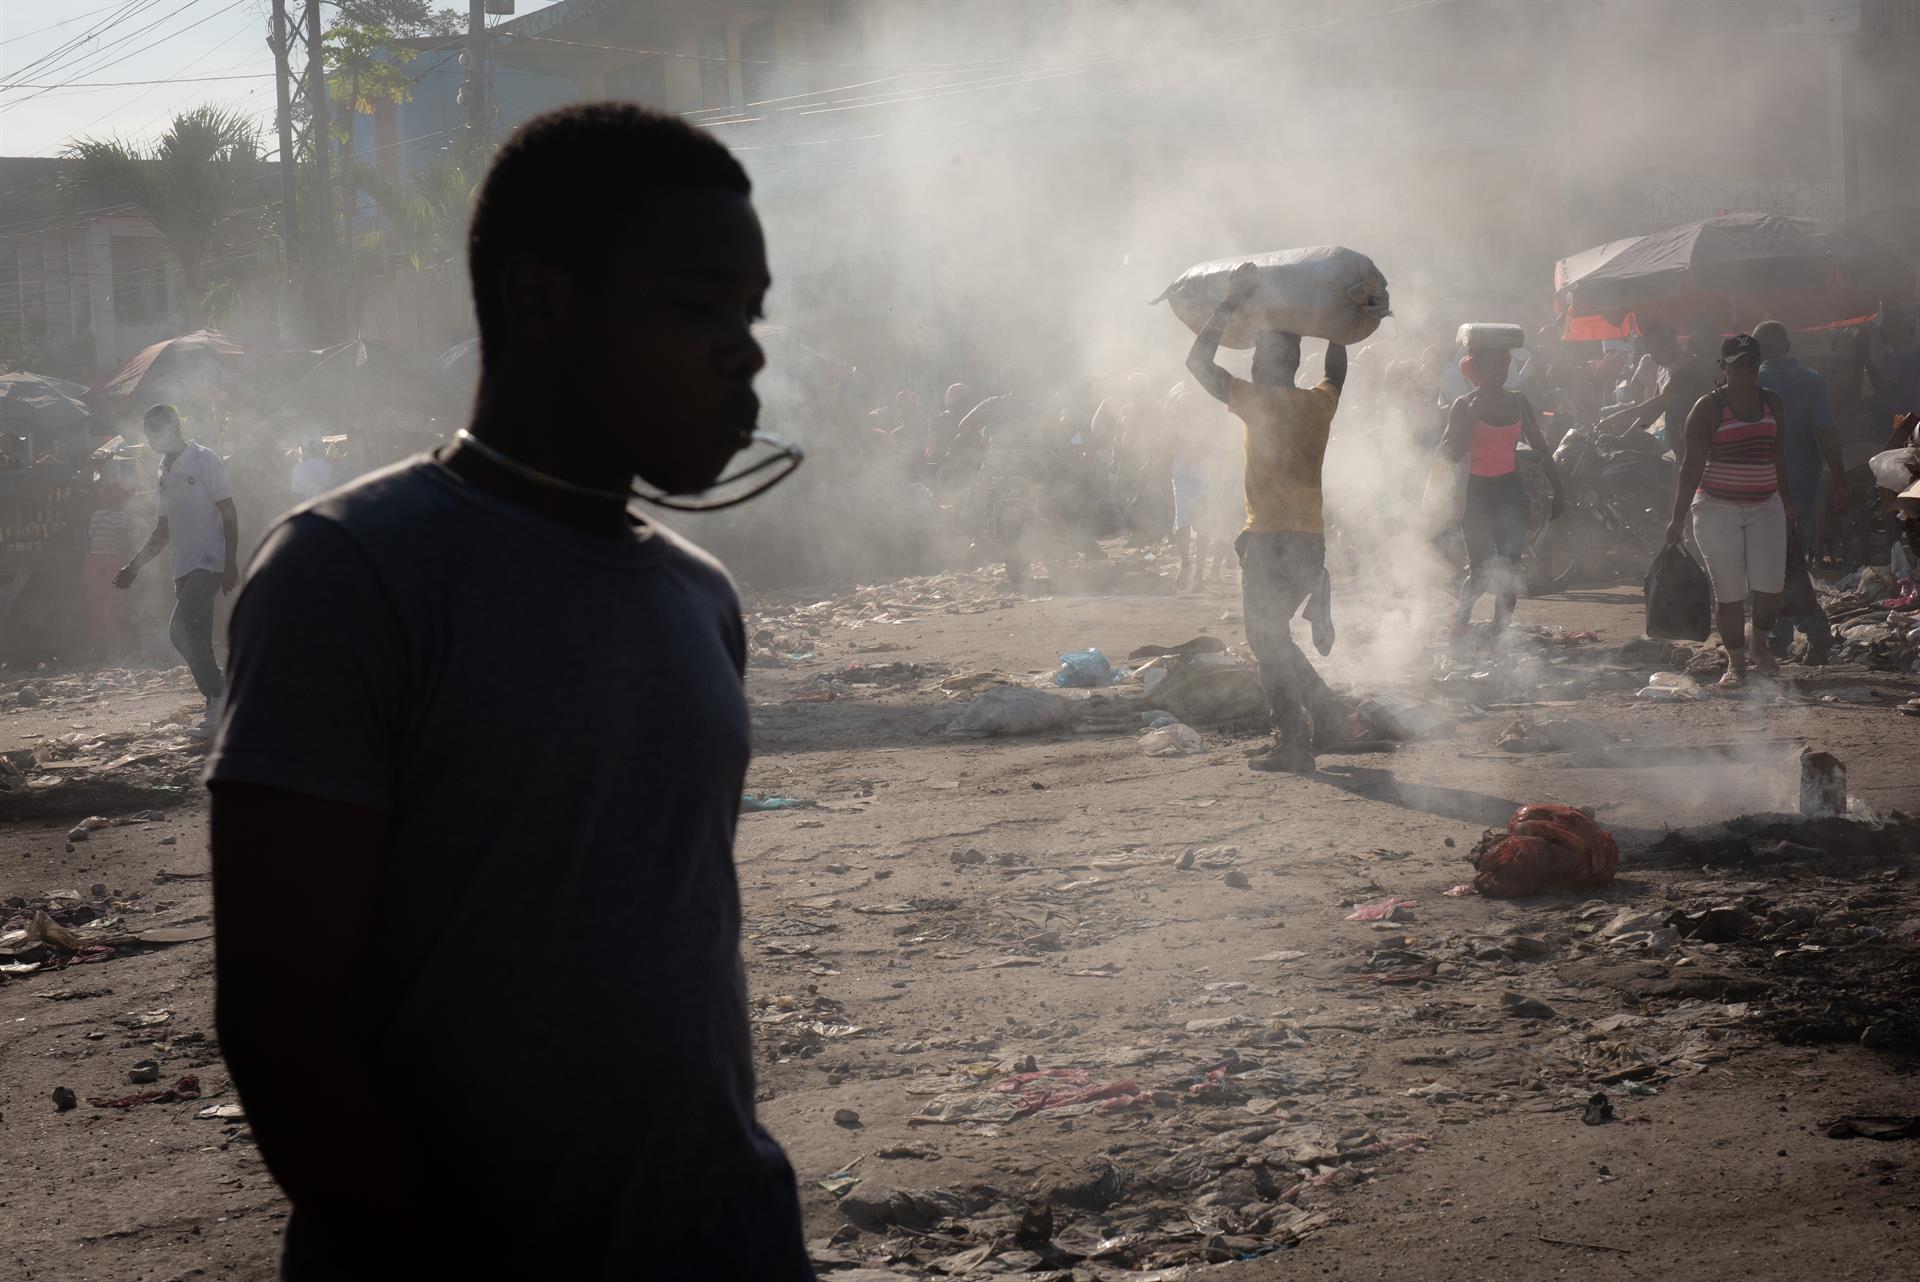 Haití, el país más peligroso para ejercer el periodismo, según la SIP